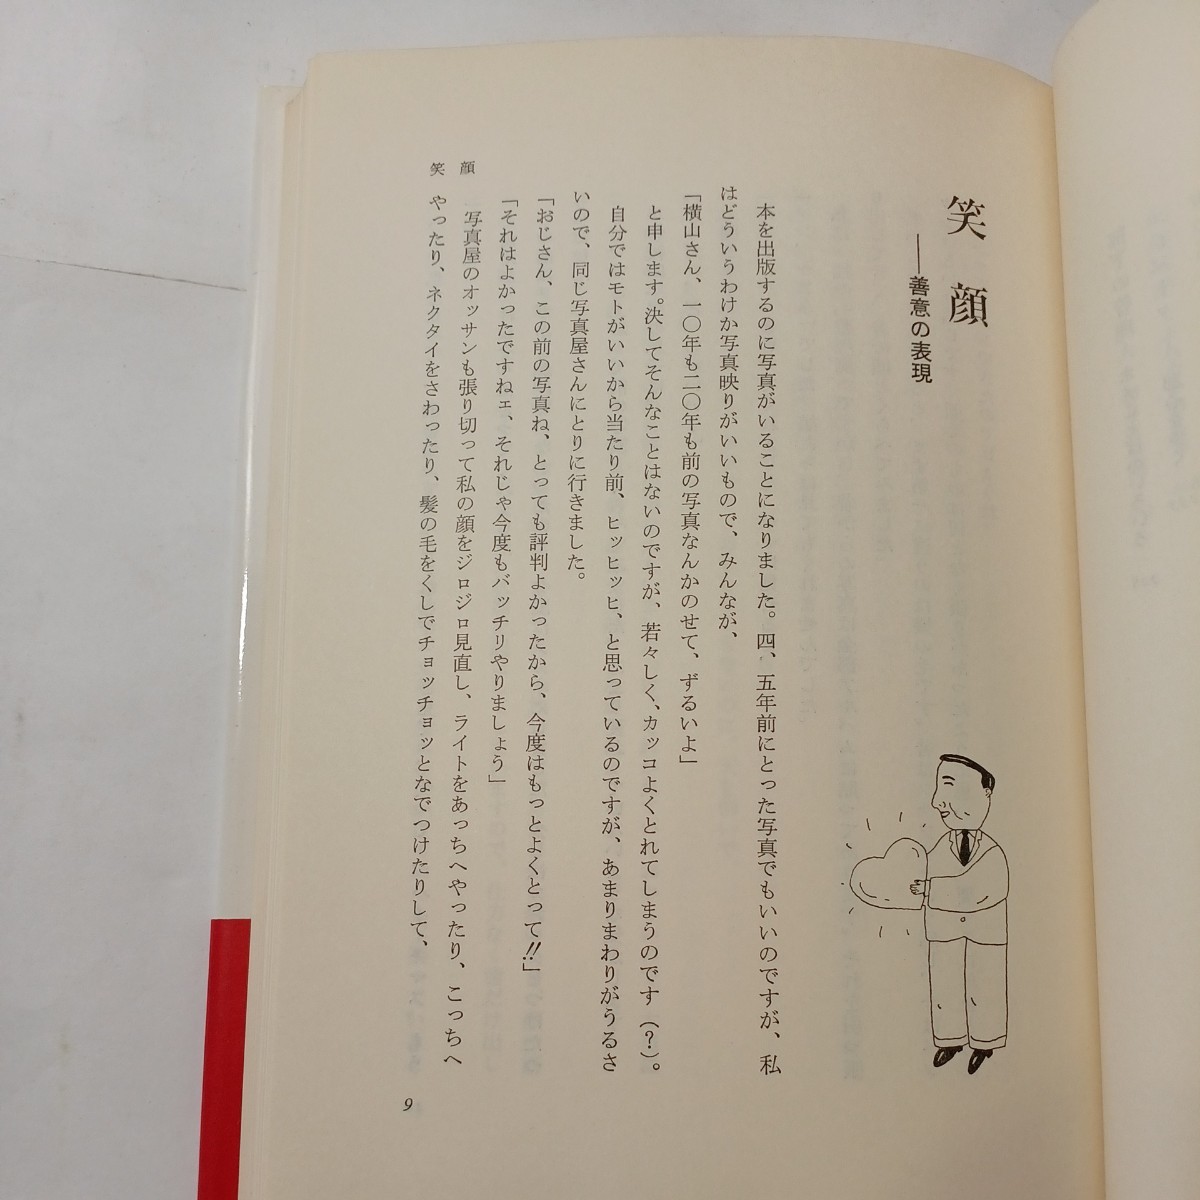 zaa-493♪銀行屋さん奮戦す 　横山信一郎(著) きんざい　 刊行年 昭59 (1984/7/2)